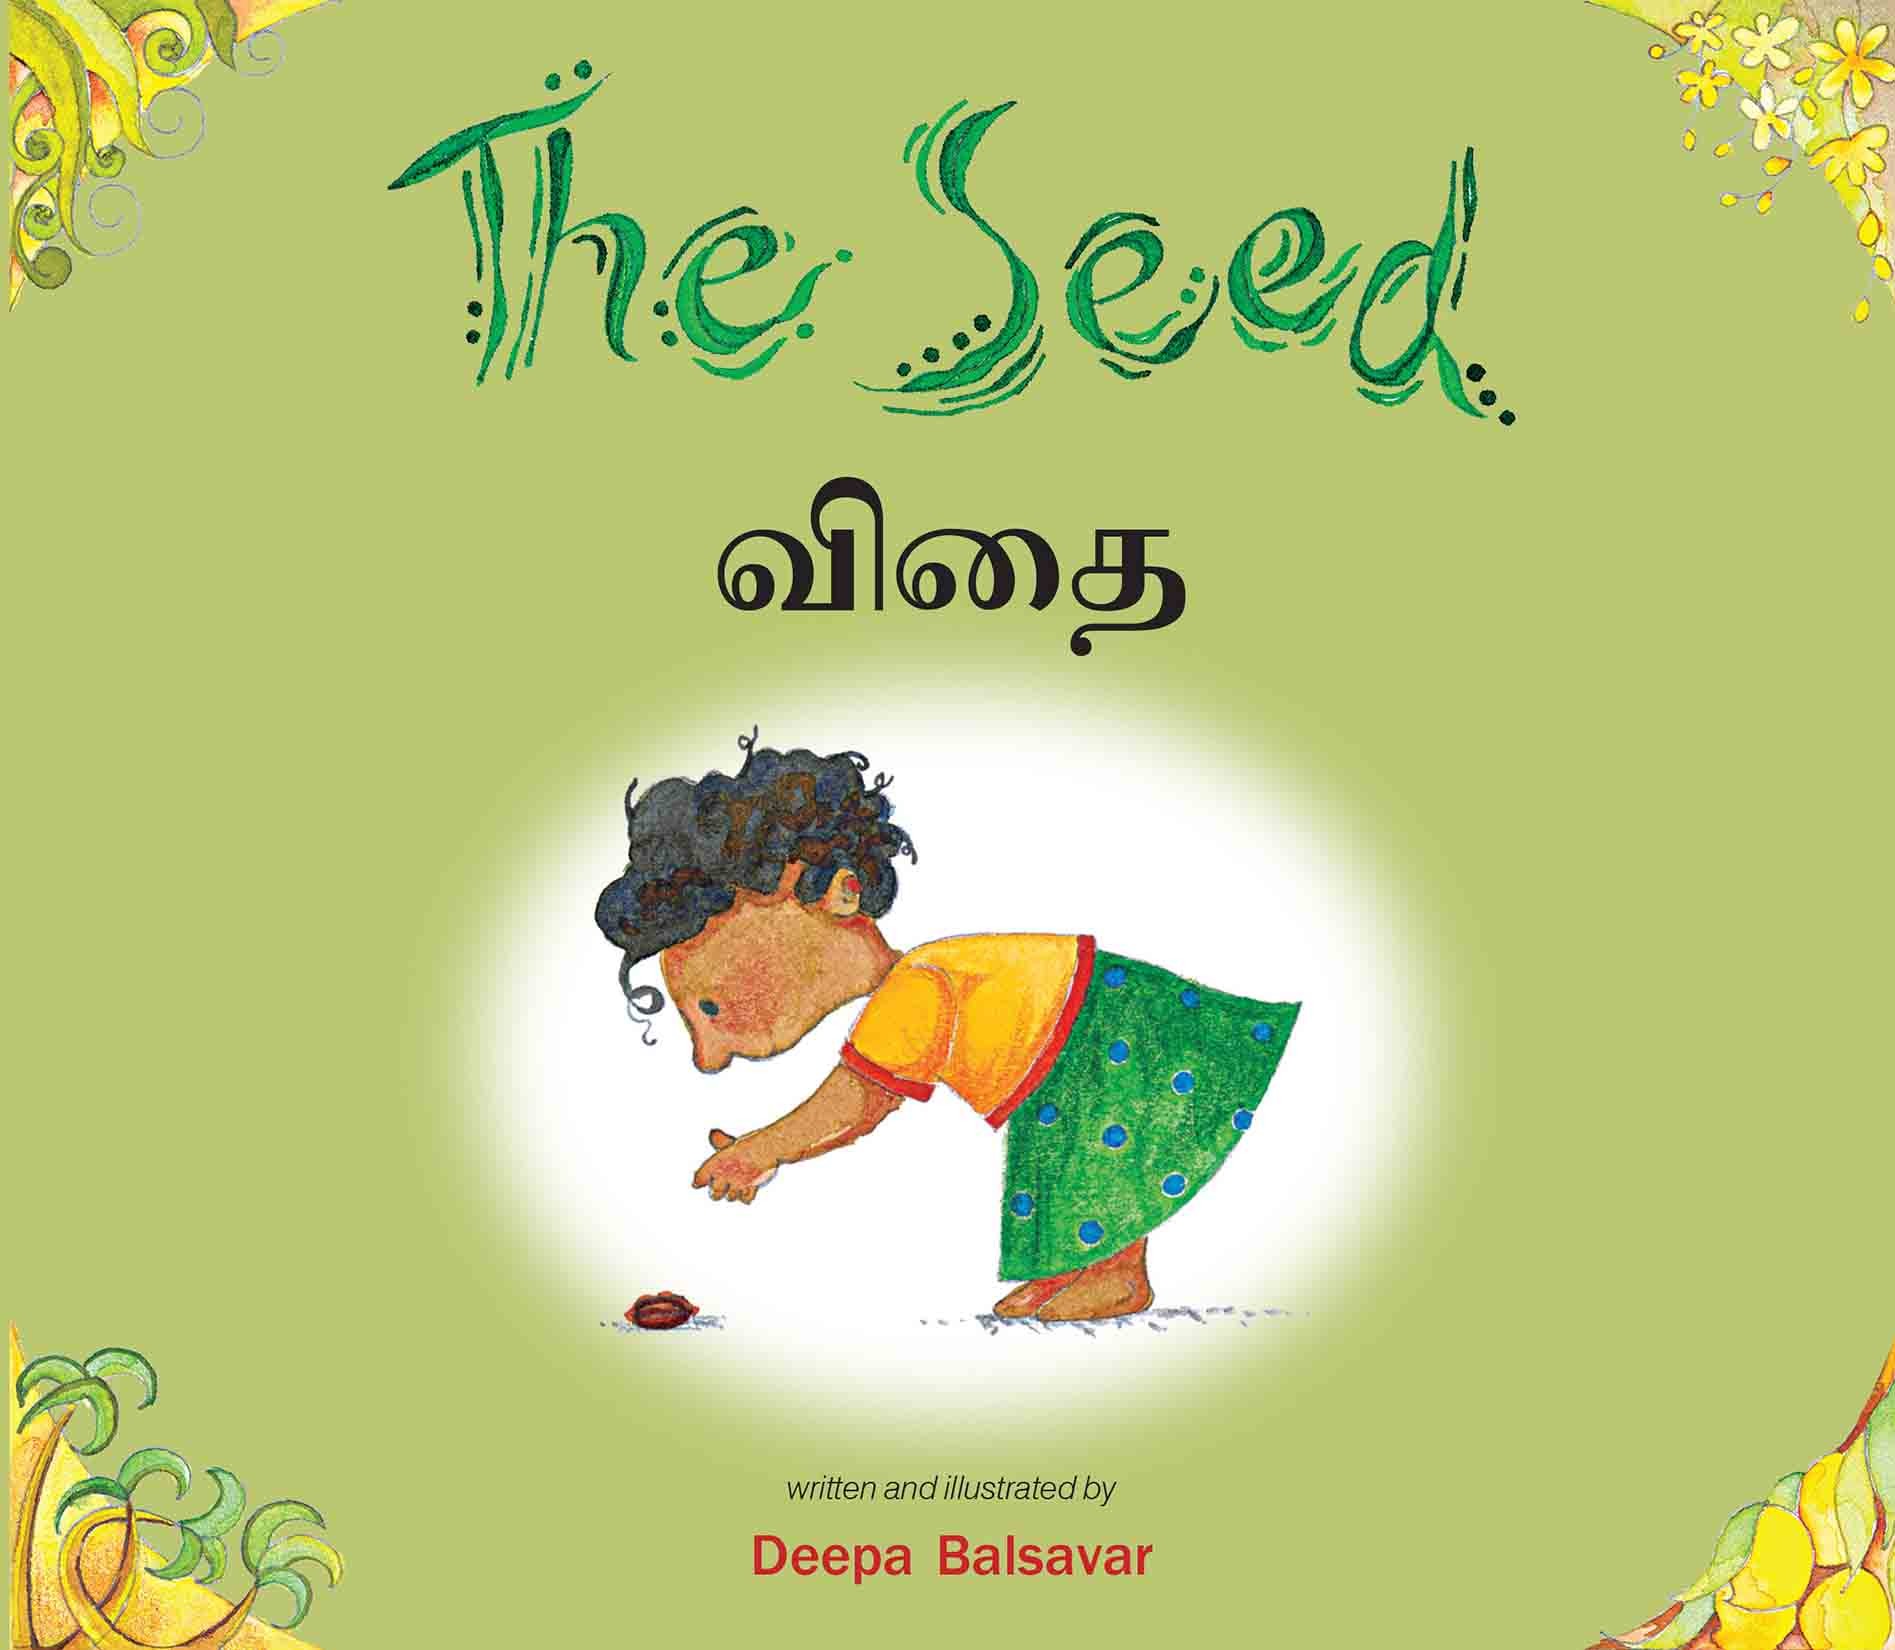 The Seed/Vidhai (English-Tamil)